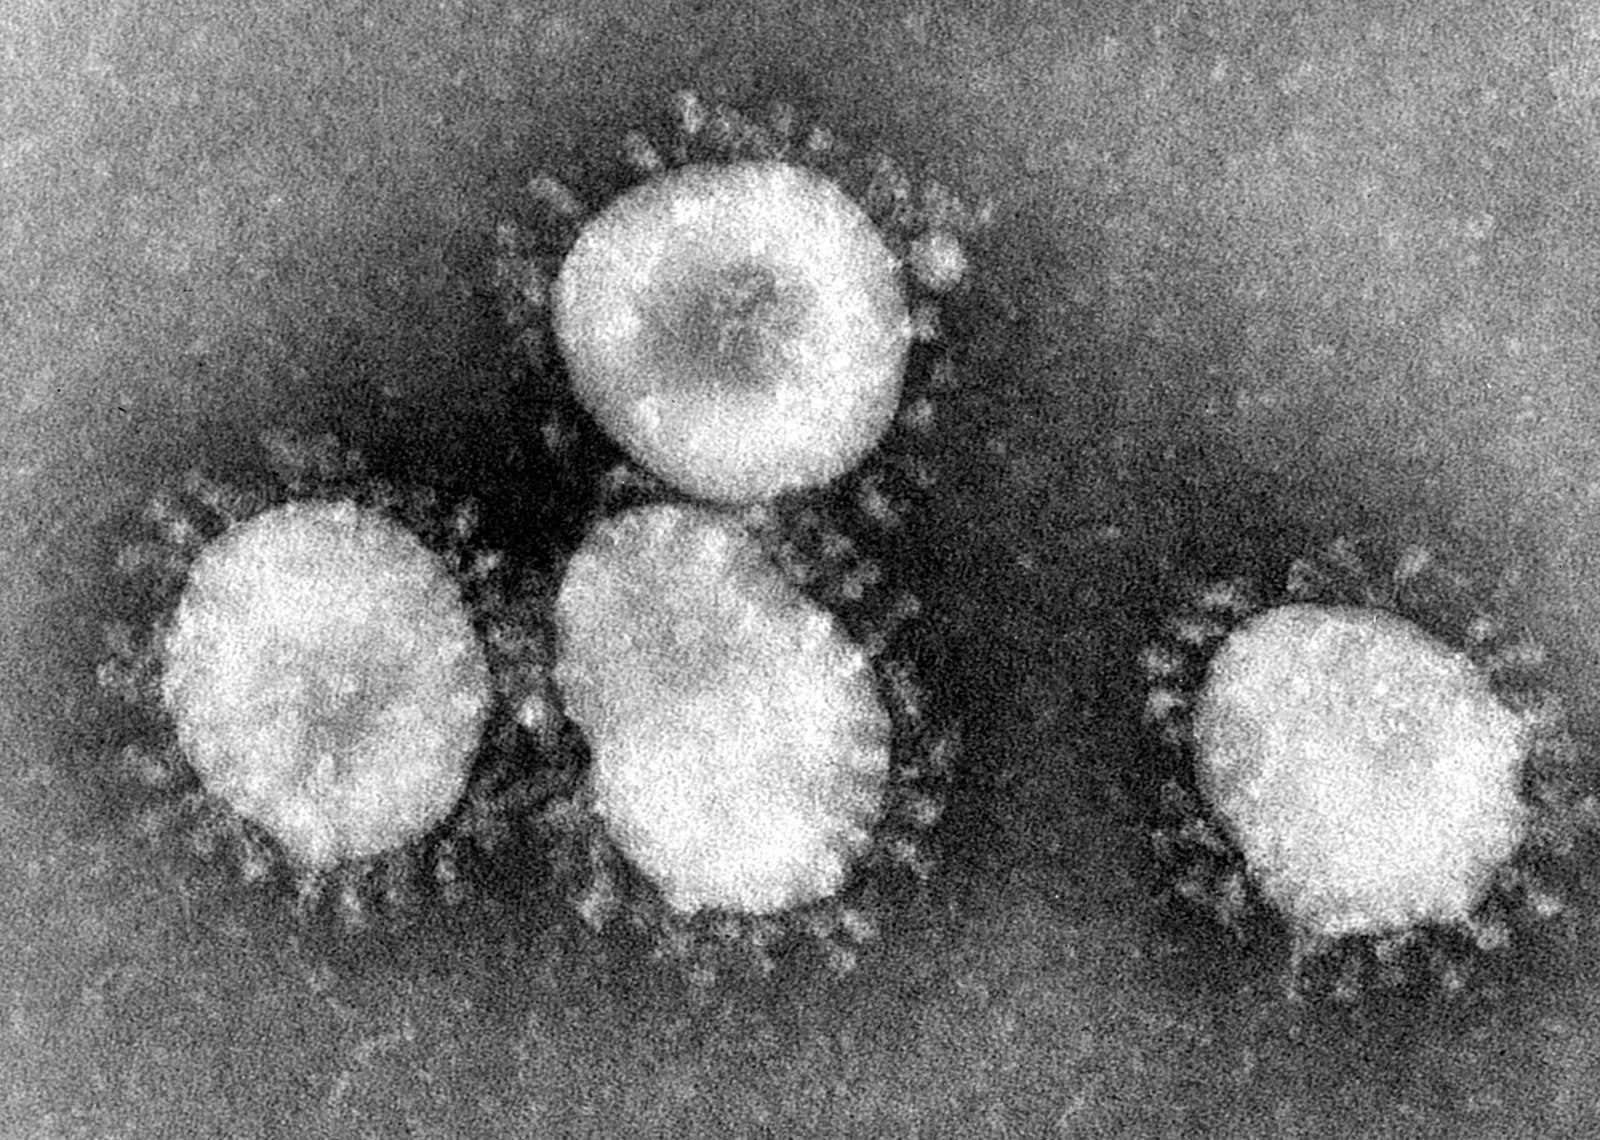 Microscopic image of Coronavirus